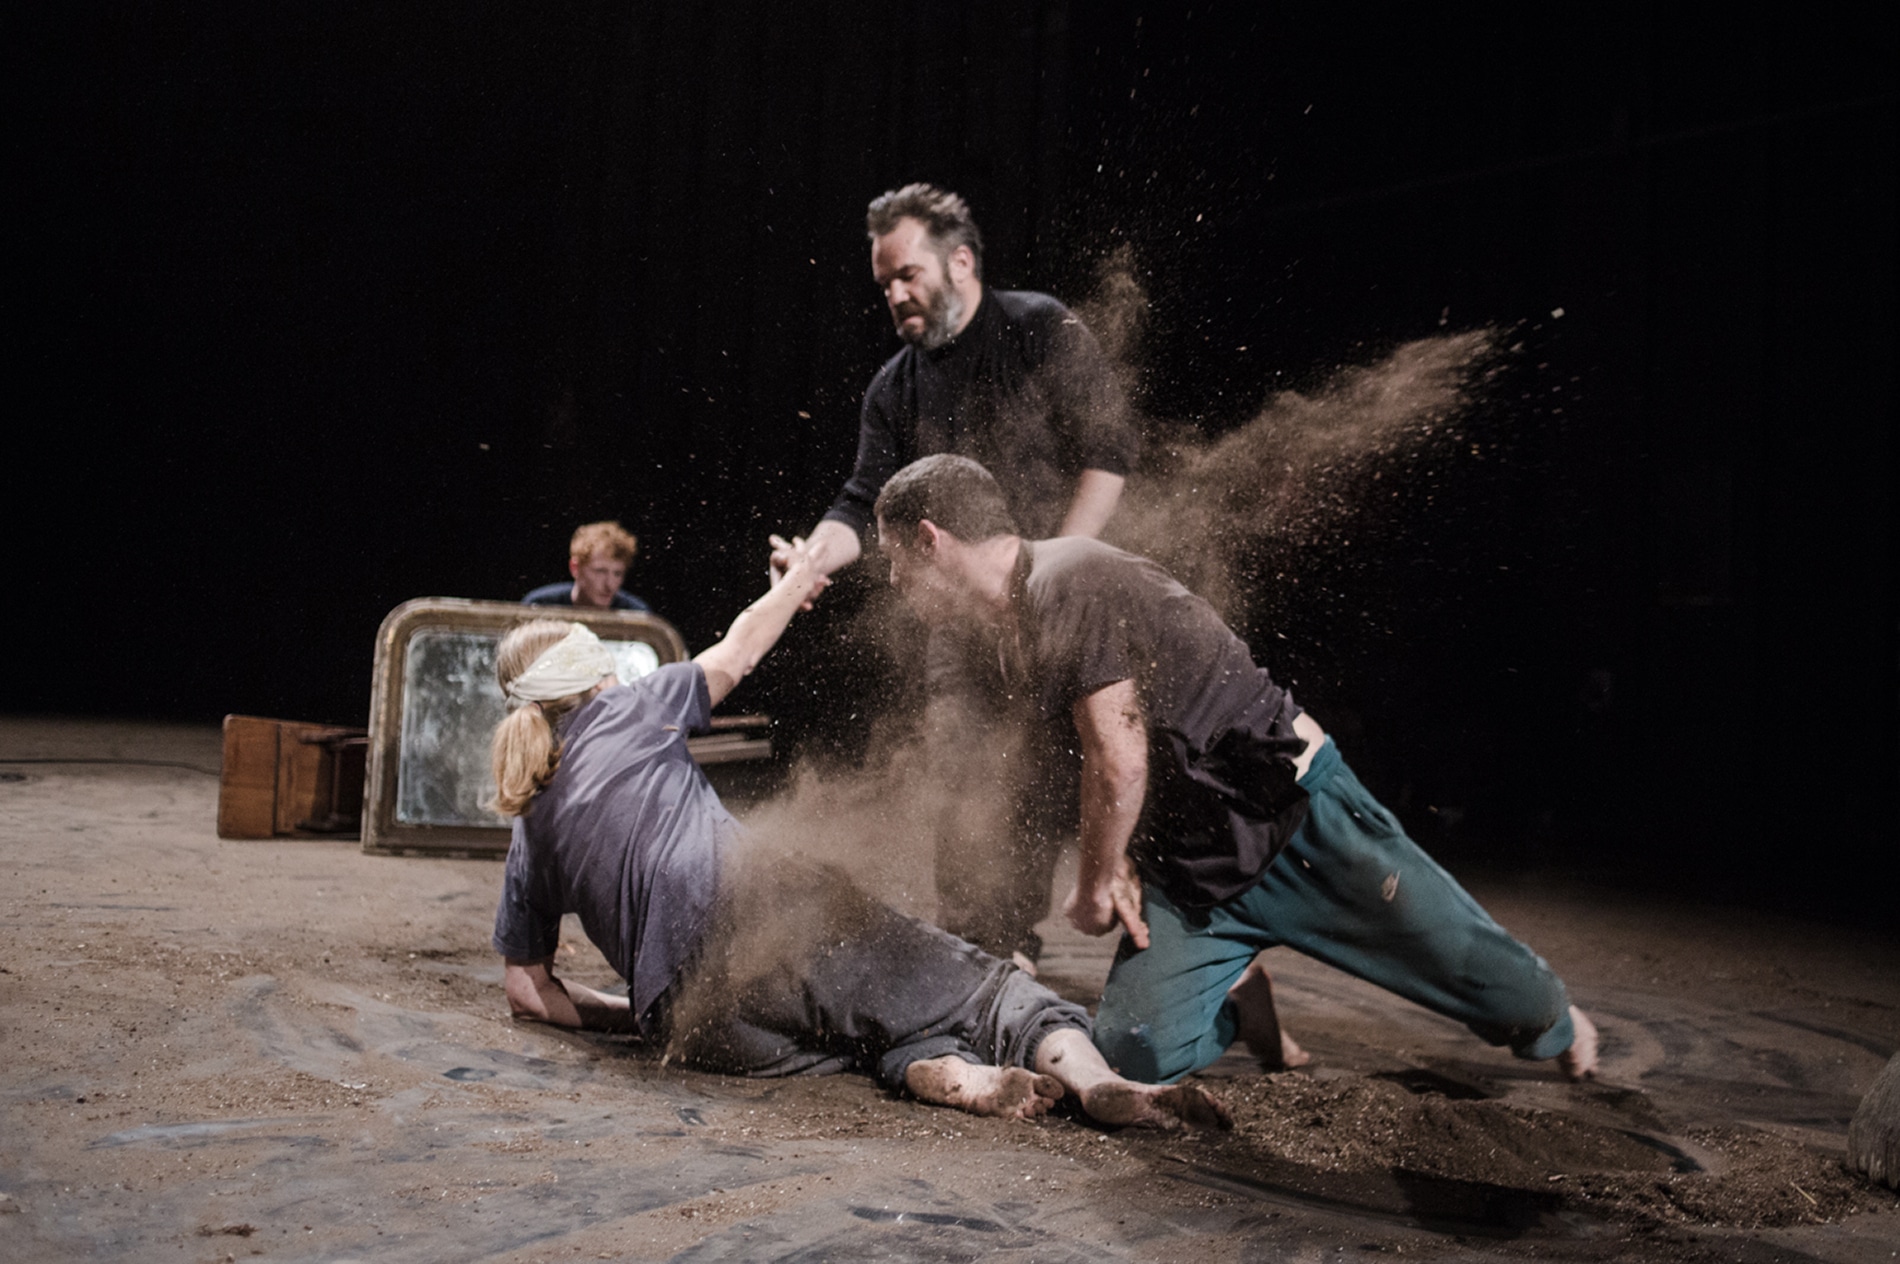 Luca Giacomoni adapte Hamlet sous la forme d’une partition théâtrale et musicale photo Cha Gonzalez